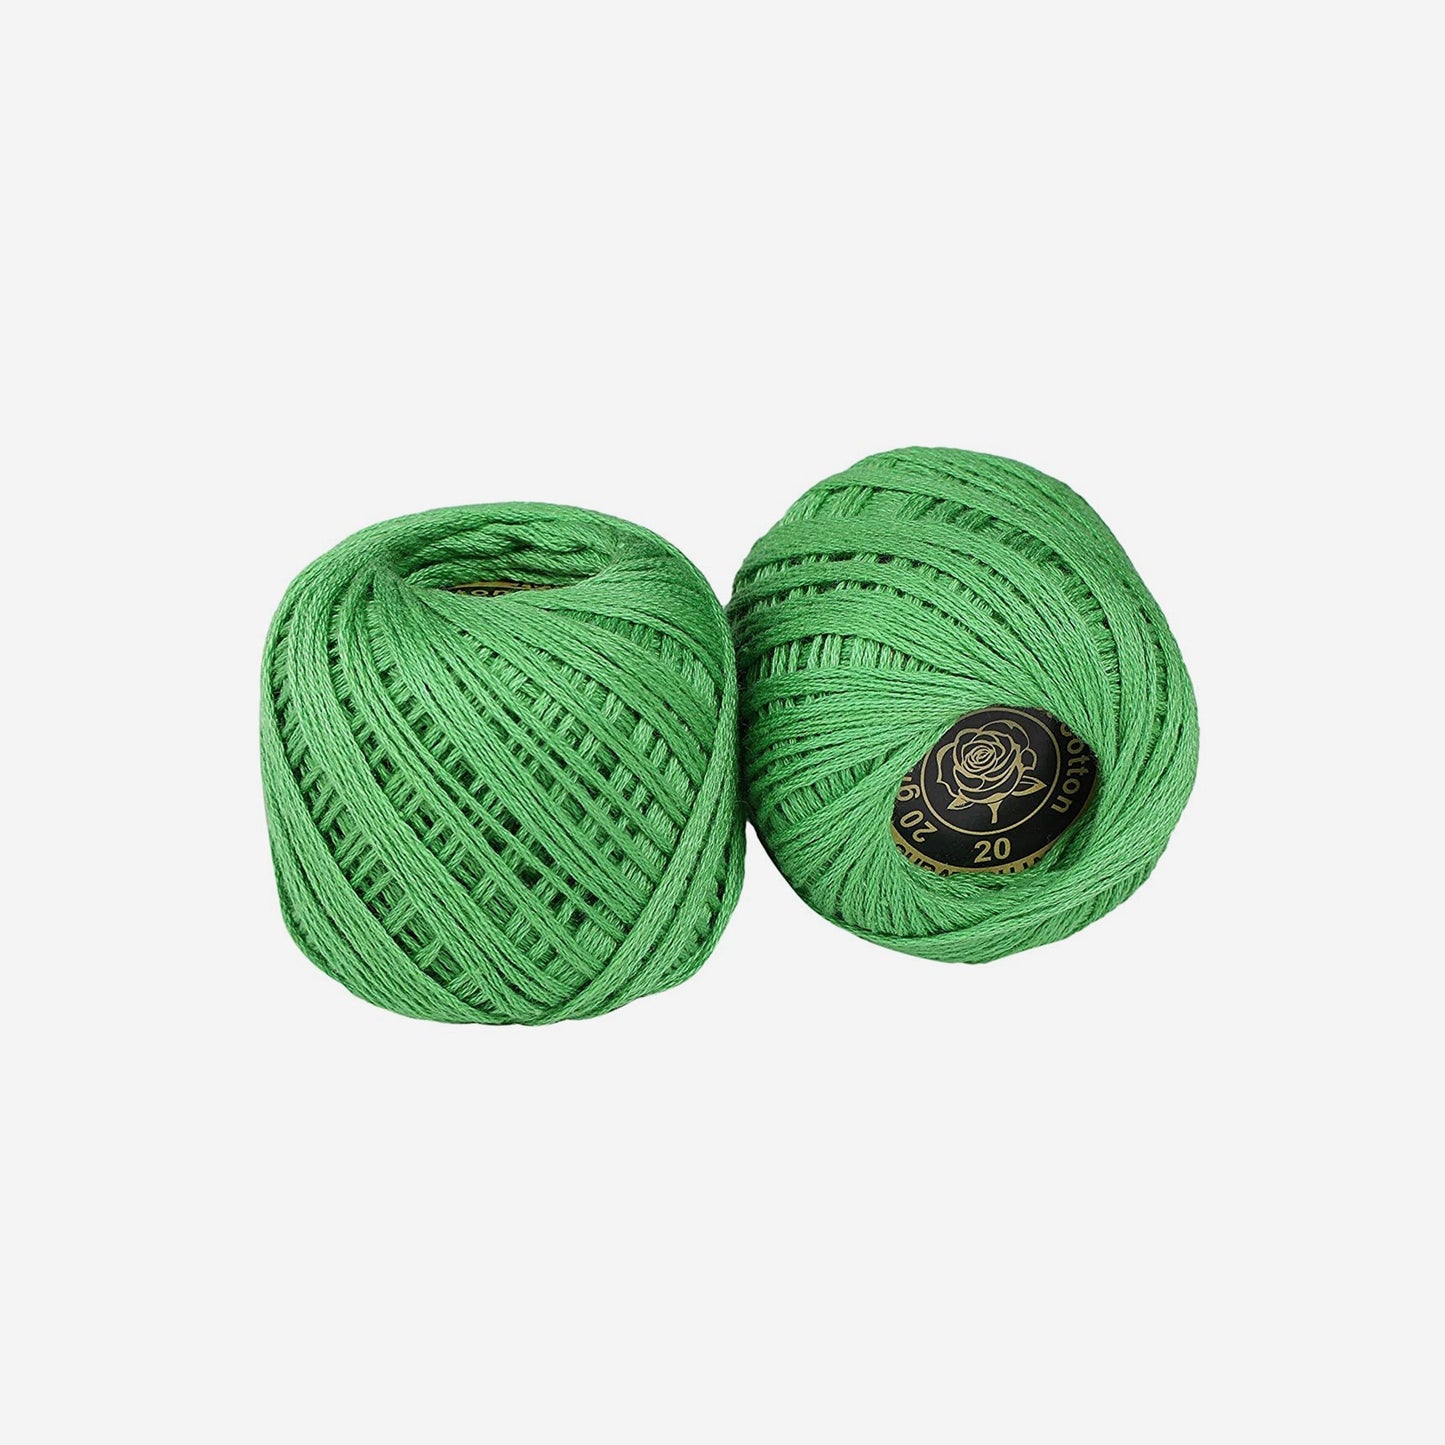 Hand-crochet hoops (Variation 20)